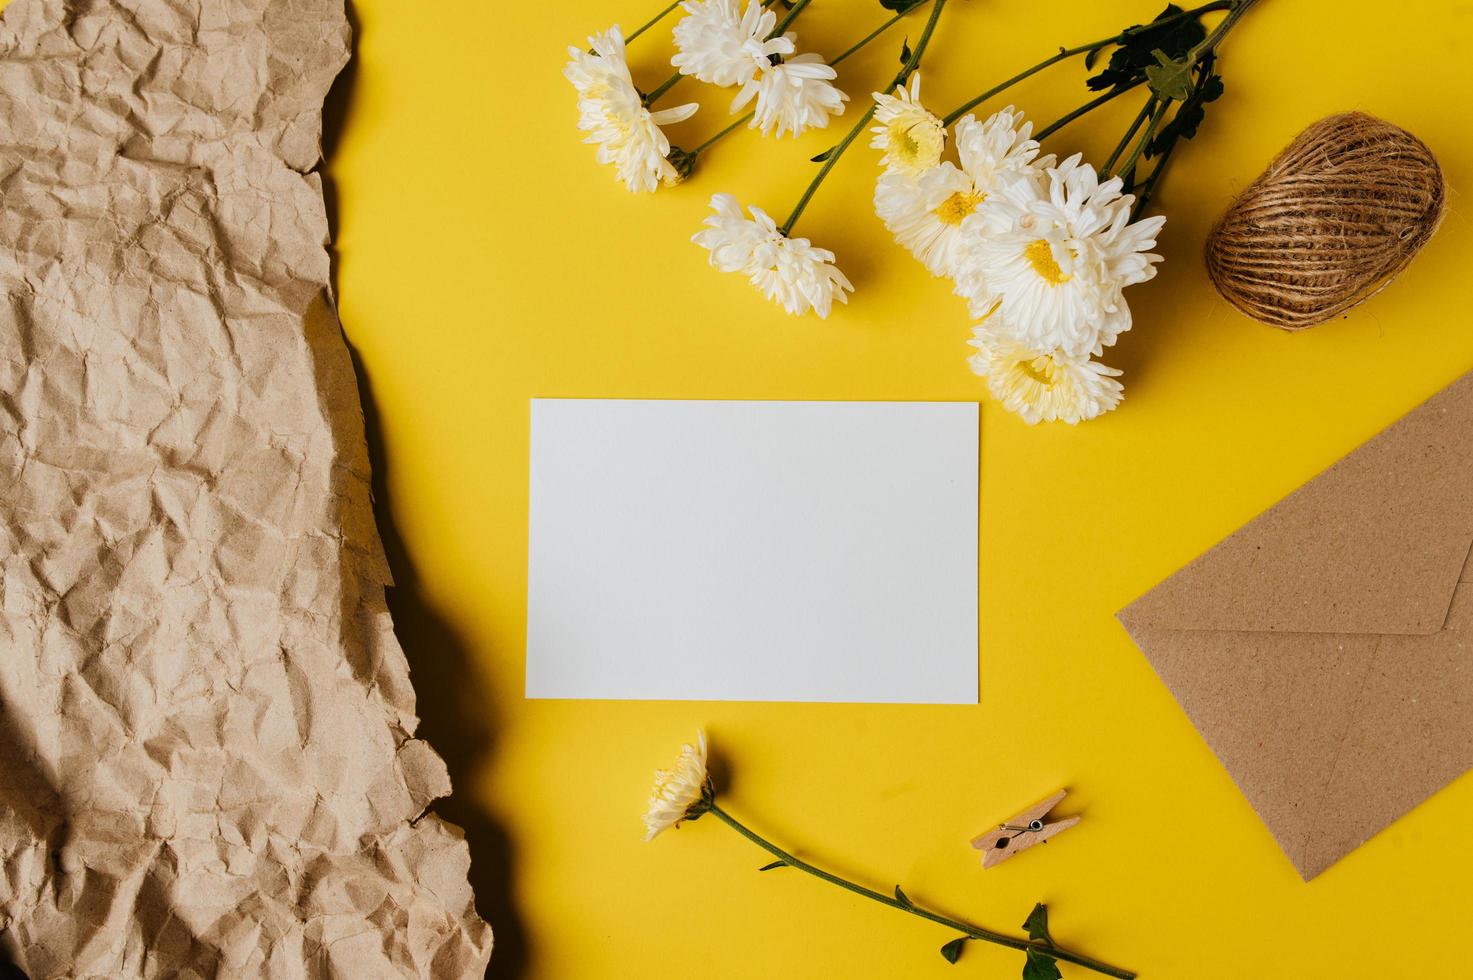 een blanco kaart met envelop en bloem wordt op een gele achtergrond geplaatst foto